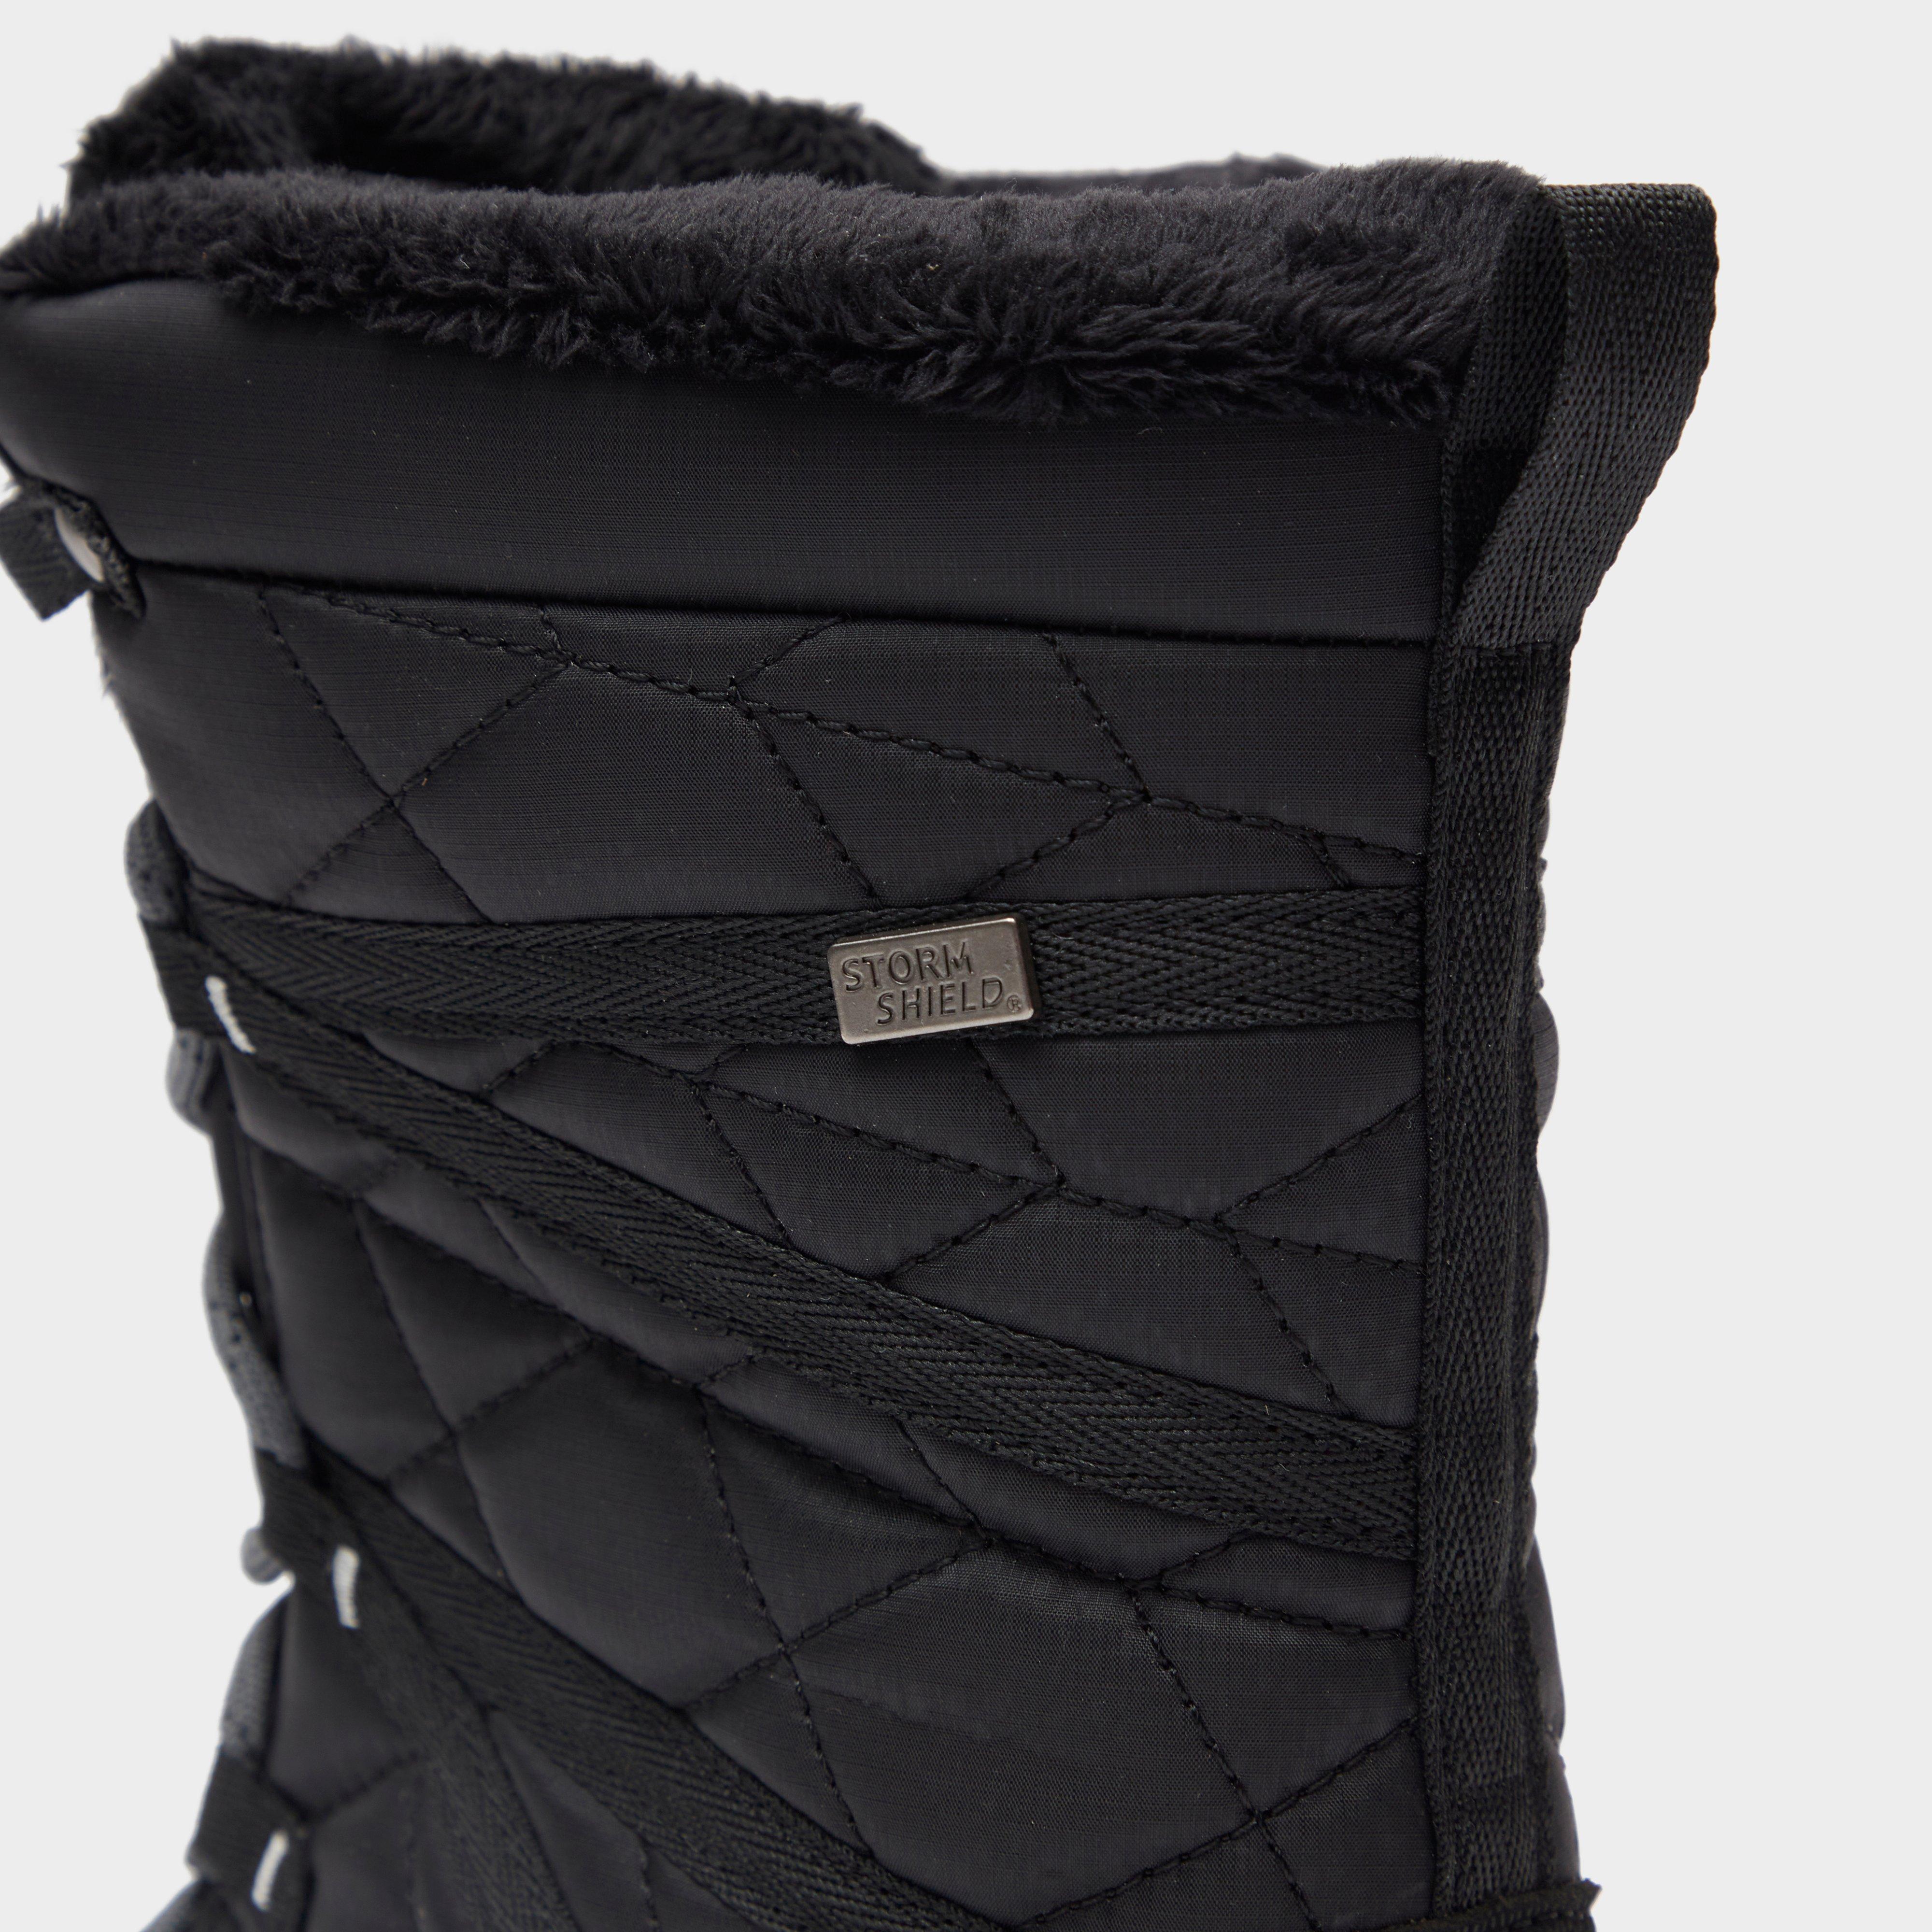 New Peter Storm Women’s Snowdrop Waterproof Walking Boot